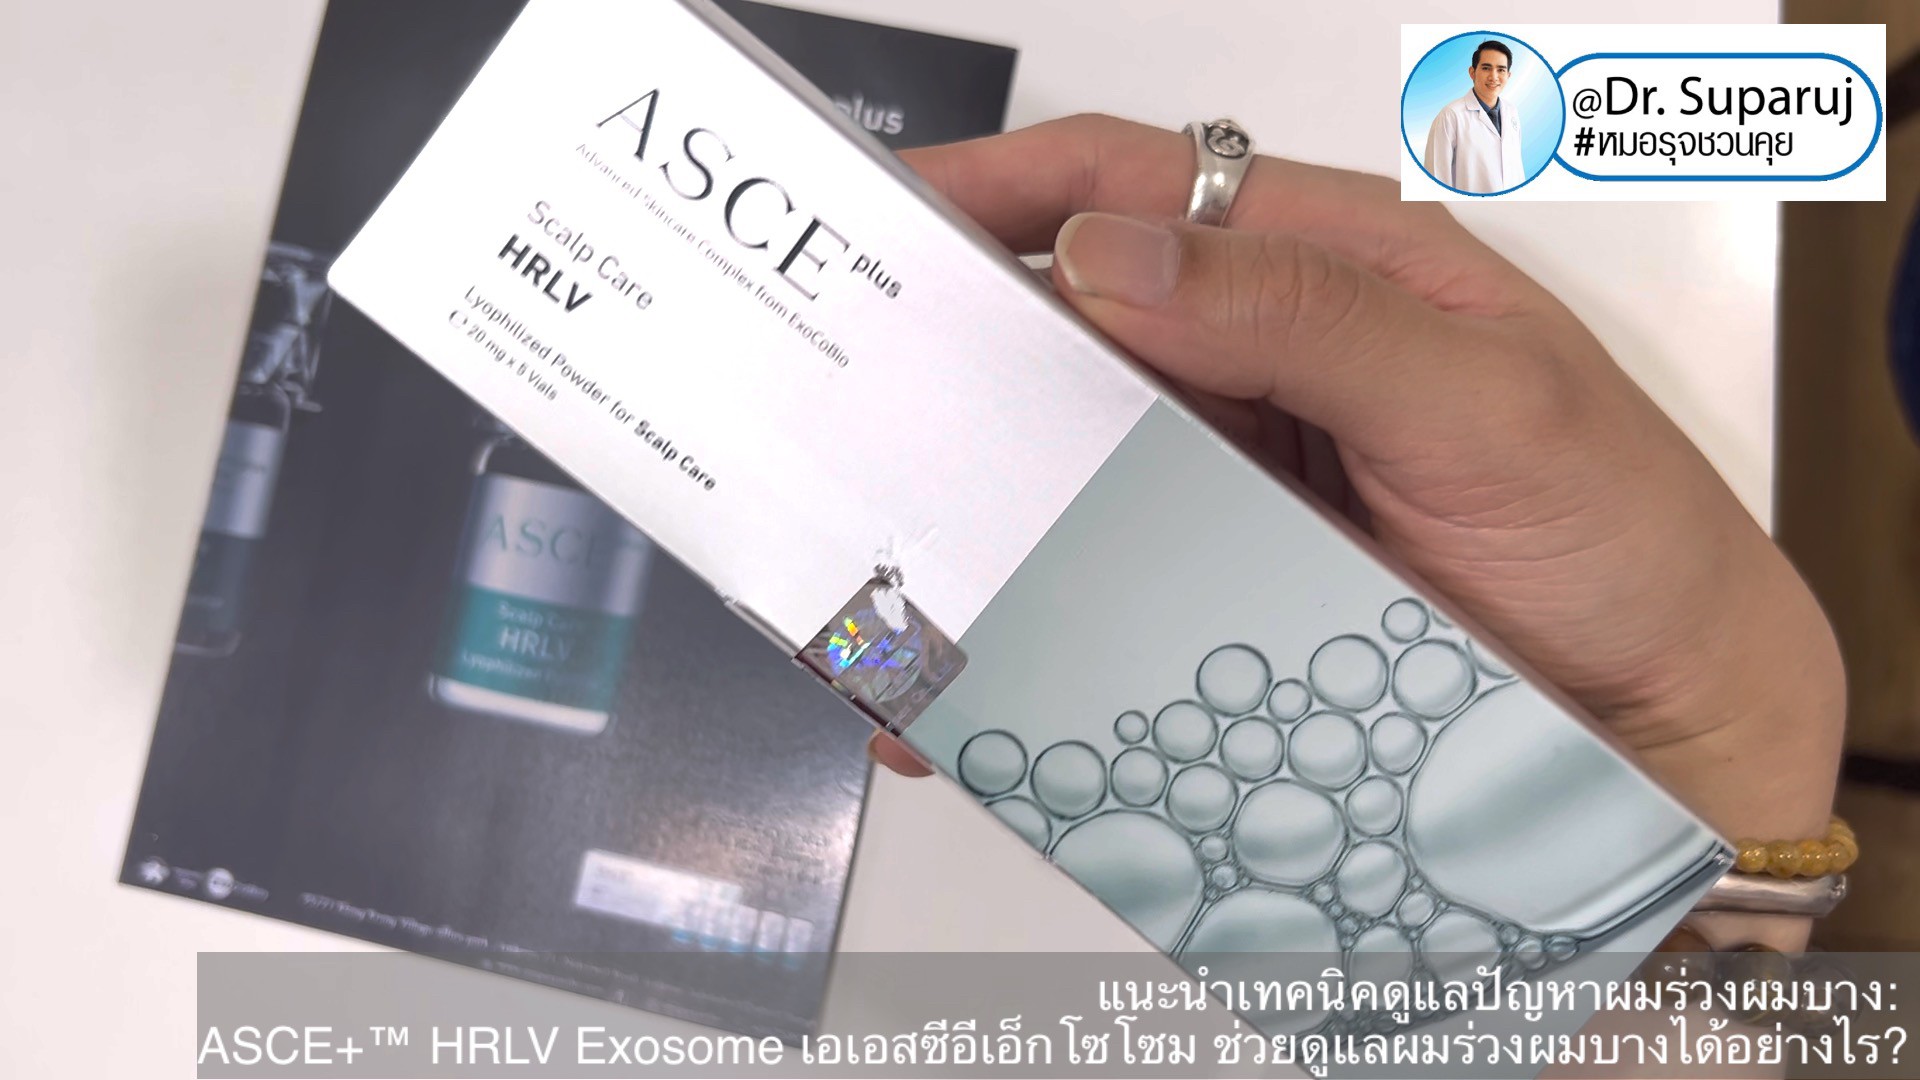 แนะนำเทคนิคดูแลปัญหาผมร่วงผมบาง: ASCE+™ HRLV Exosome เอเอสซีอีเอ็กโซโซม ช่วยดูแลผมร่วงผมบางได้อย่างไร? (ASCE+™ HRLV Exosome Therapy for Hair Loss)